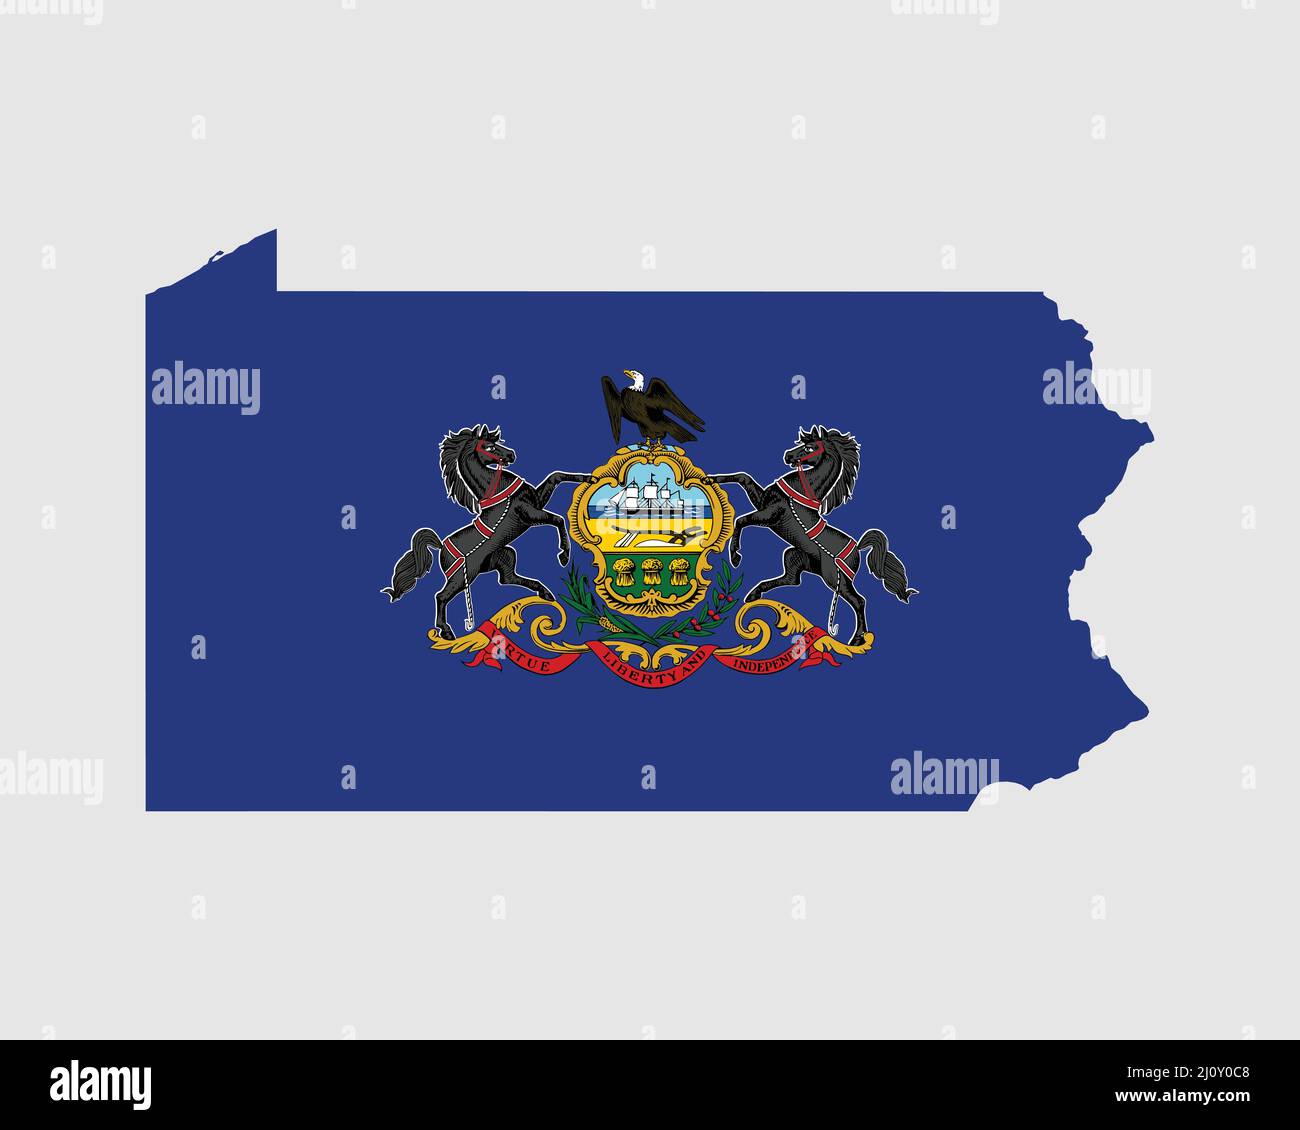 Drapeau de carte de Pennsylvanie. Carte de PA, Etats-Unis avec le drapeau de l'Etat. États-Unis, Amérique, États-Unis d'Amérique, bannière d'État des États-Unis. Vecteur Illustration de Vecteur